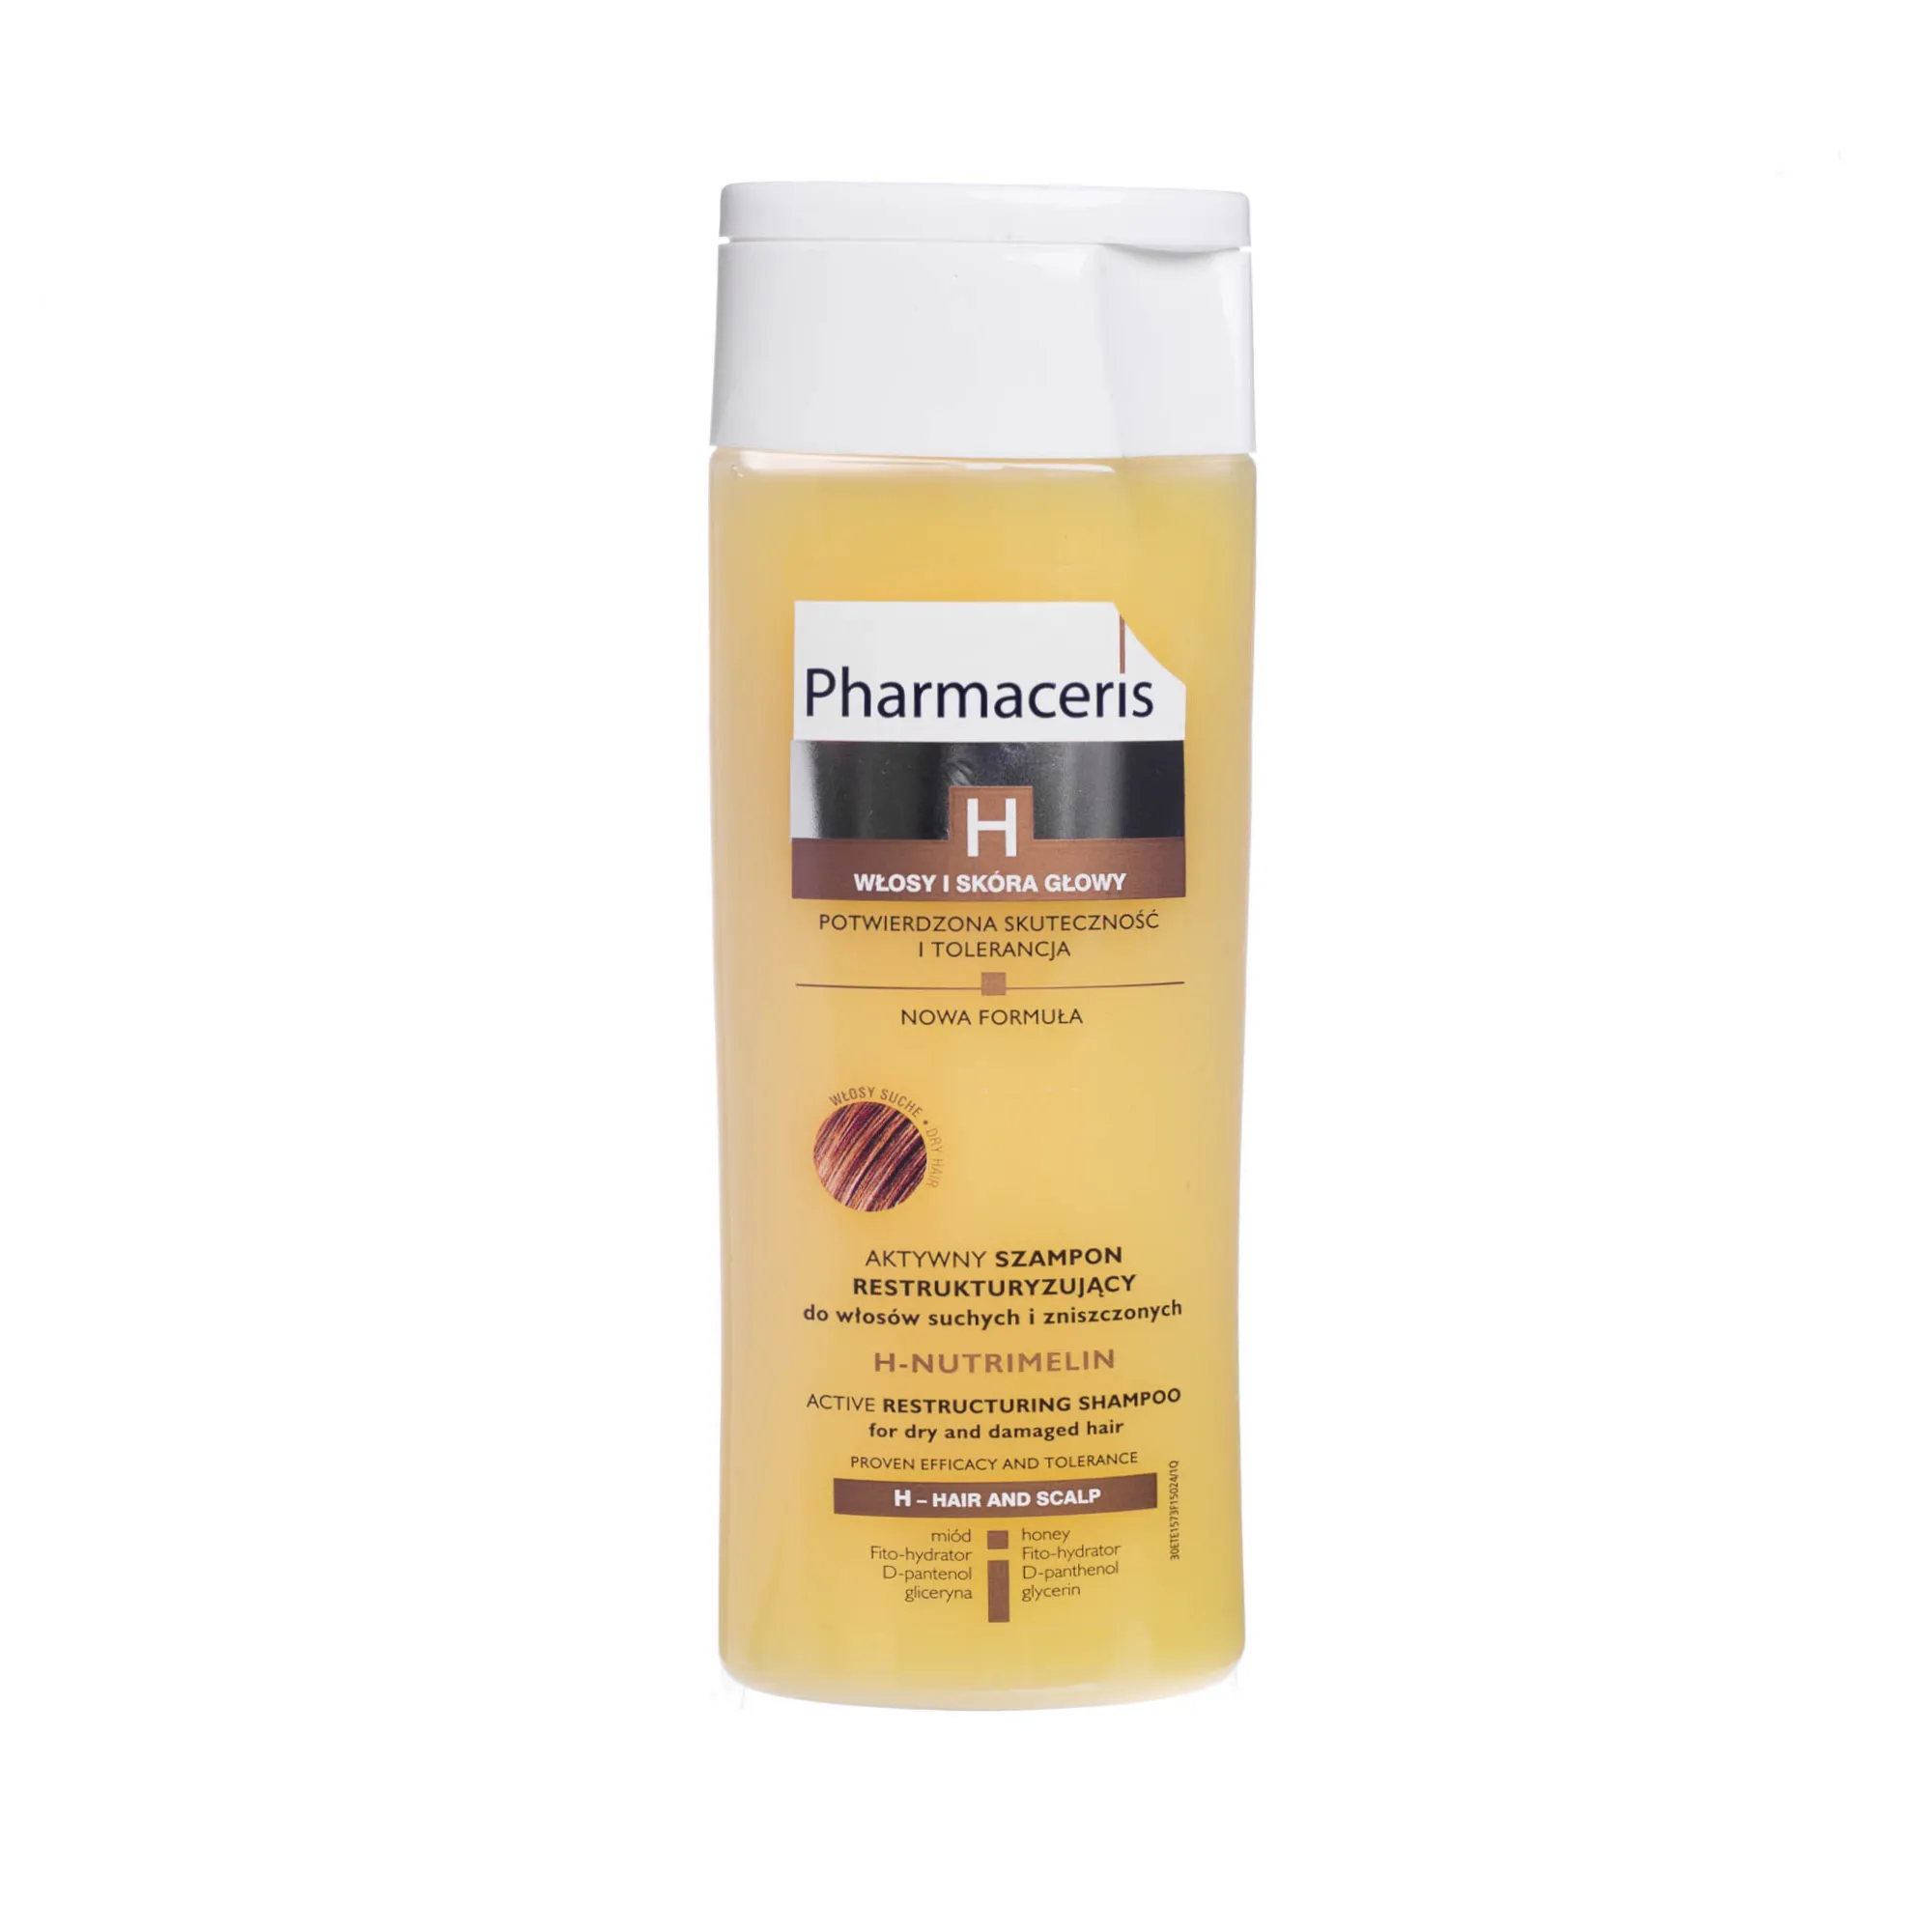 Pharmaceris H H-Nutrimelin aktywny szampon restrukturyzujący do włosów suchych i zniszczonych, 250 ml 